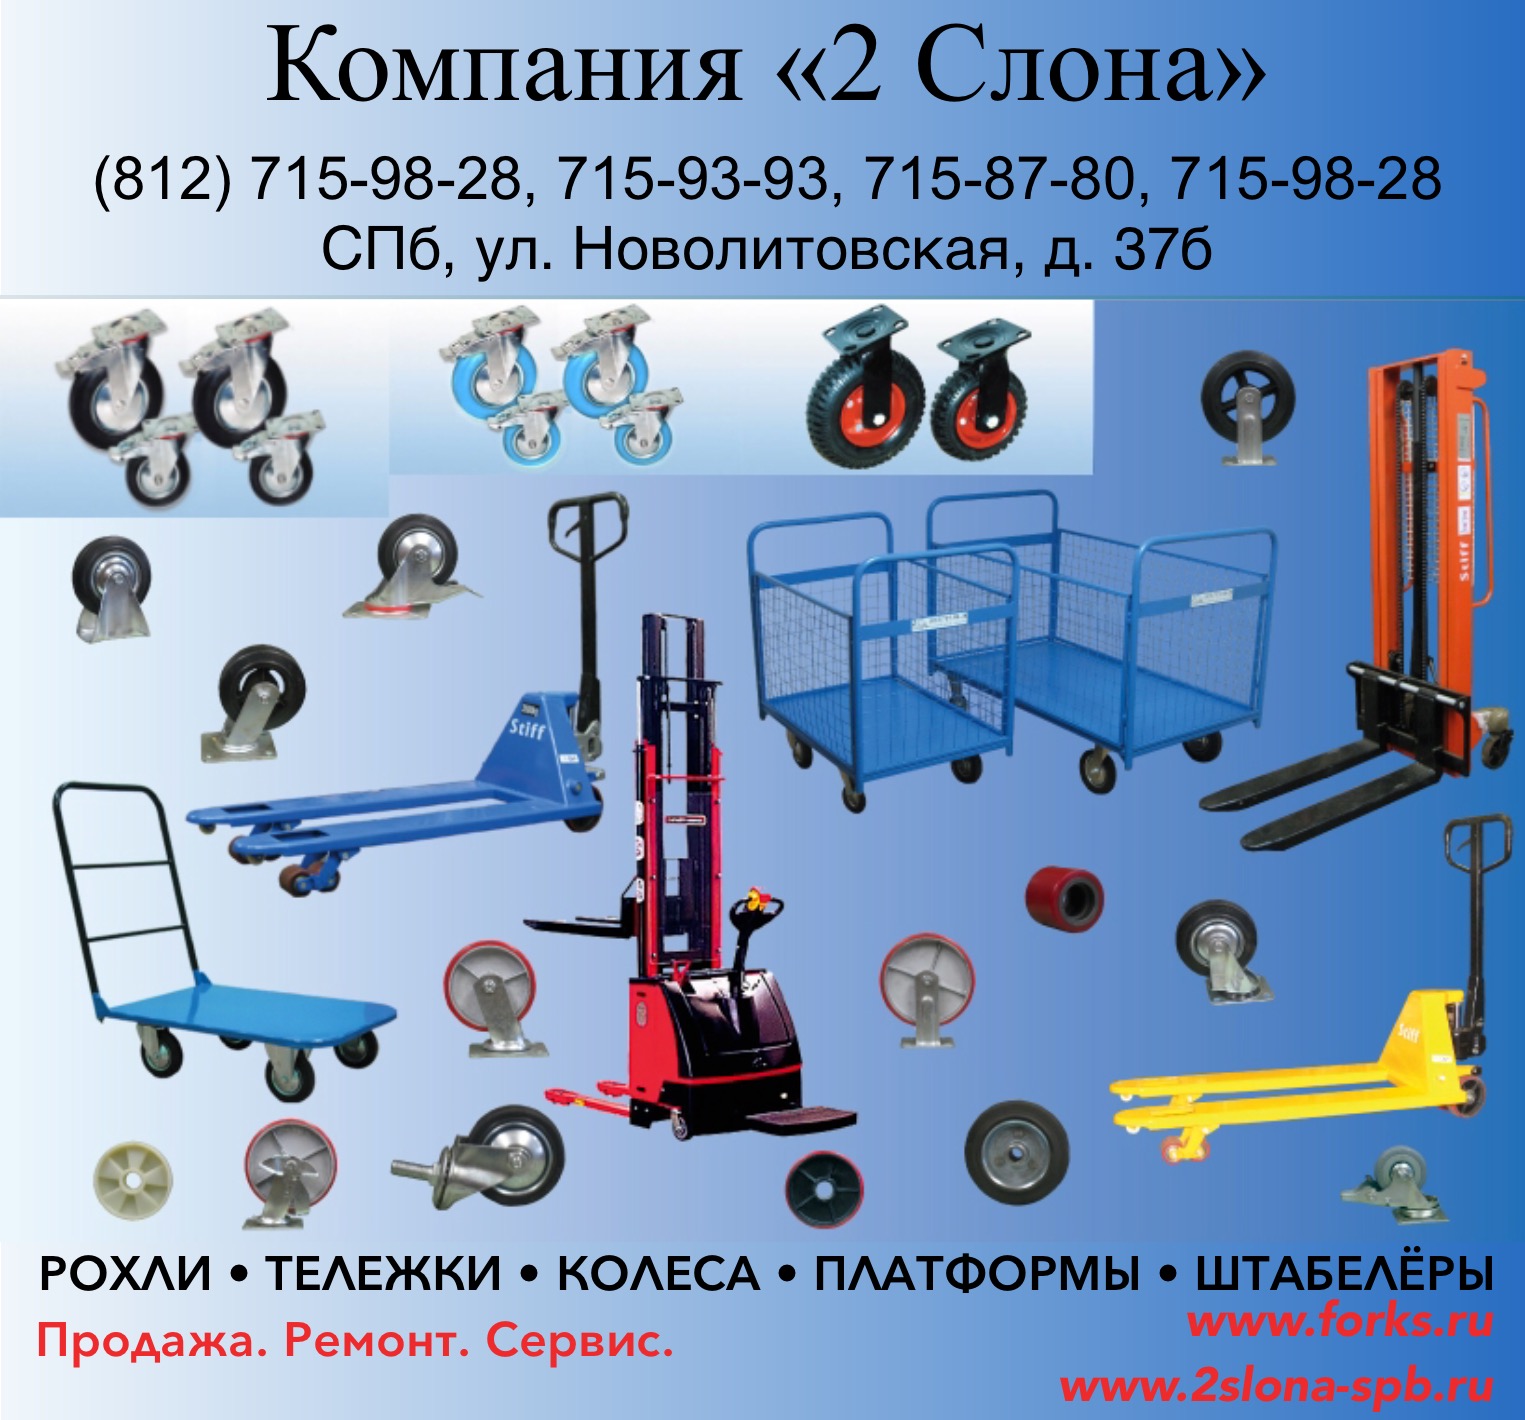 Оборудование для склада. Продажа, обслуживание  в городе Санкт-Петербург, фото 1, телефон продавца: +7 (901) 315-93-93